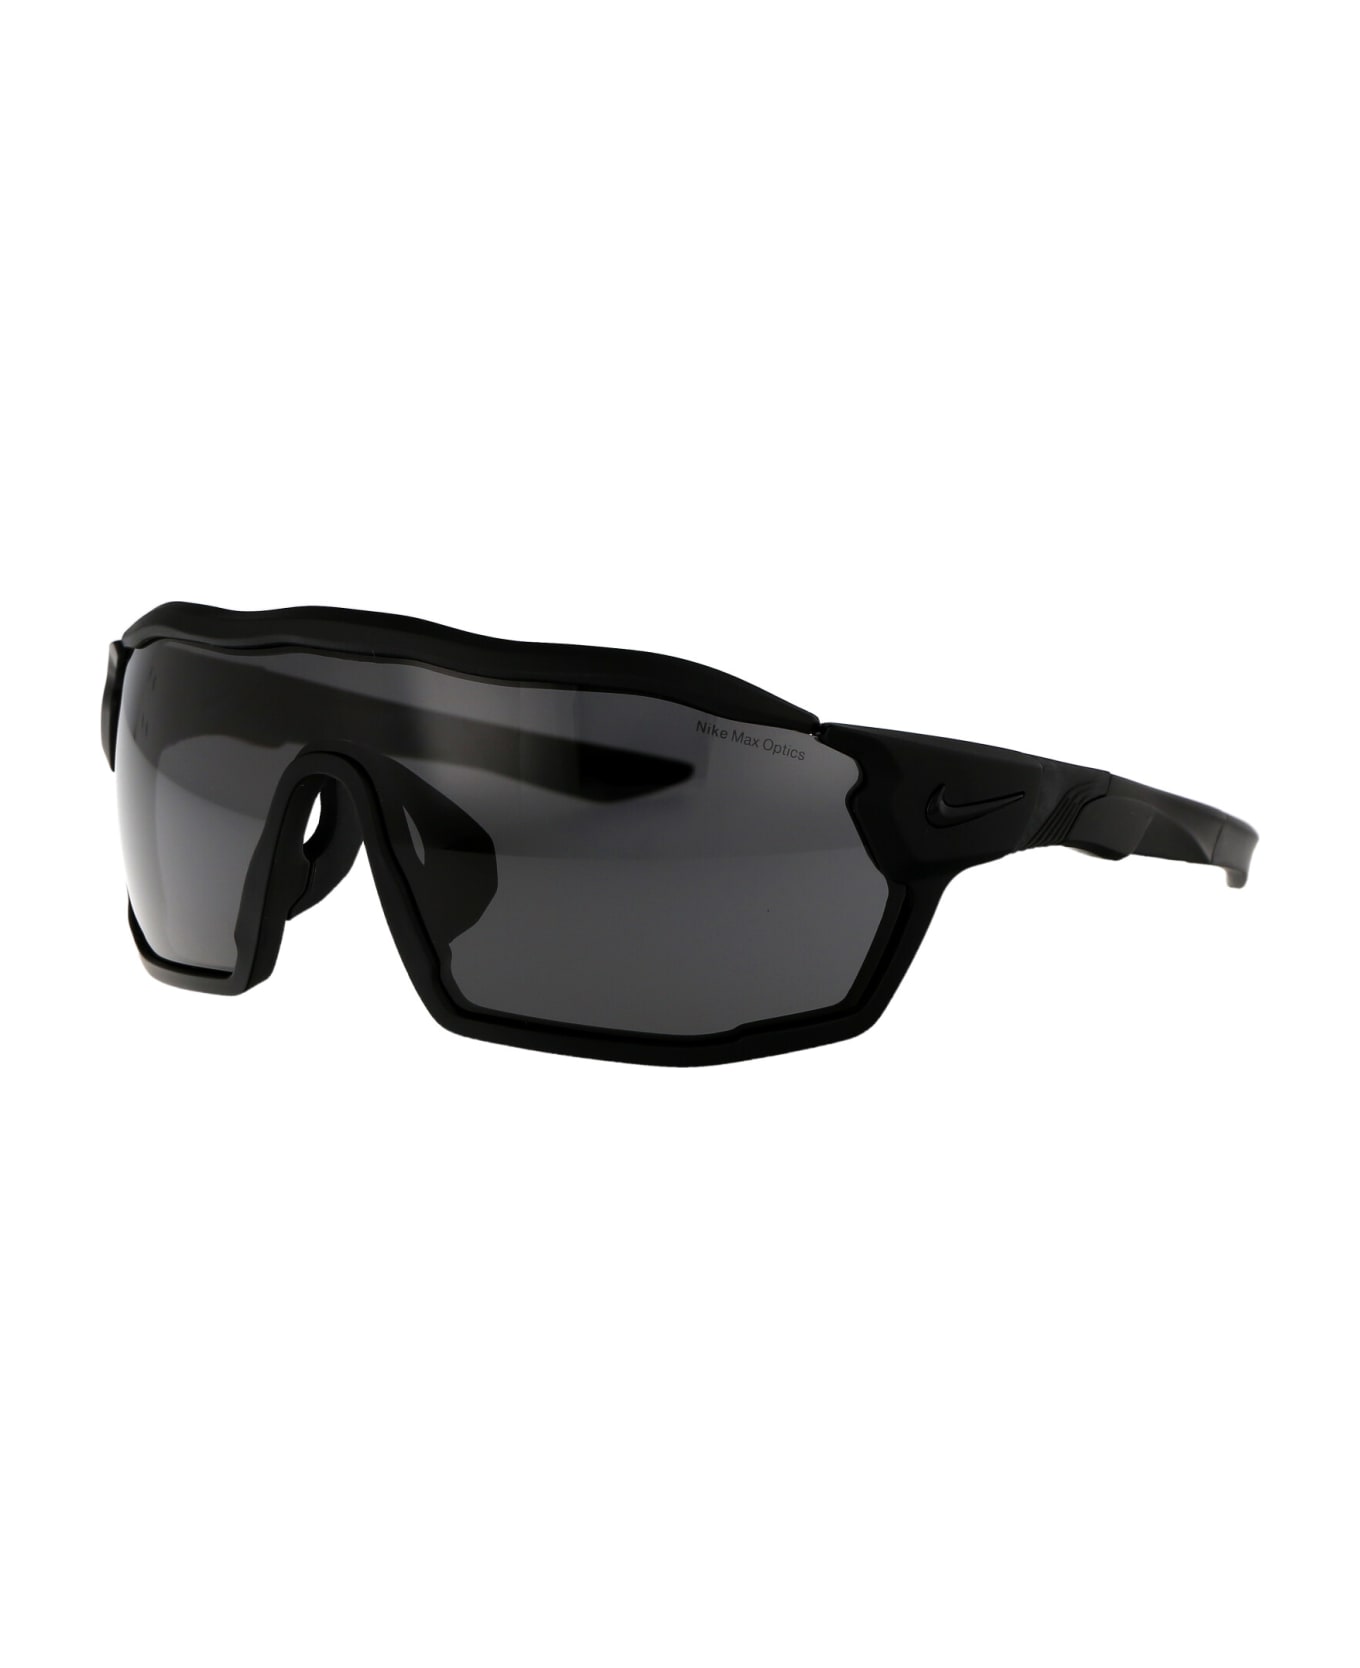 Nike Show X Rush Sunglasses - 010 DARK GREY MATTE BLACK サングラス